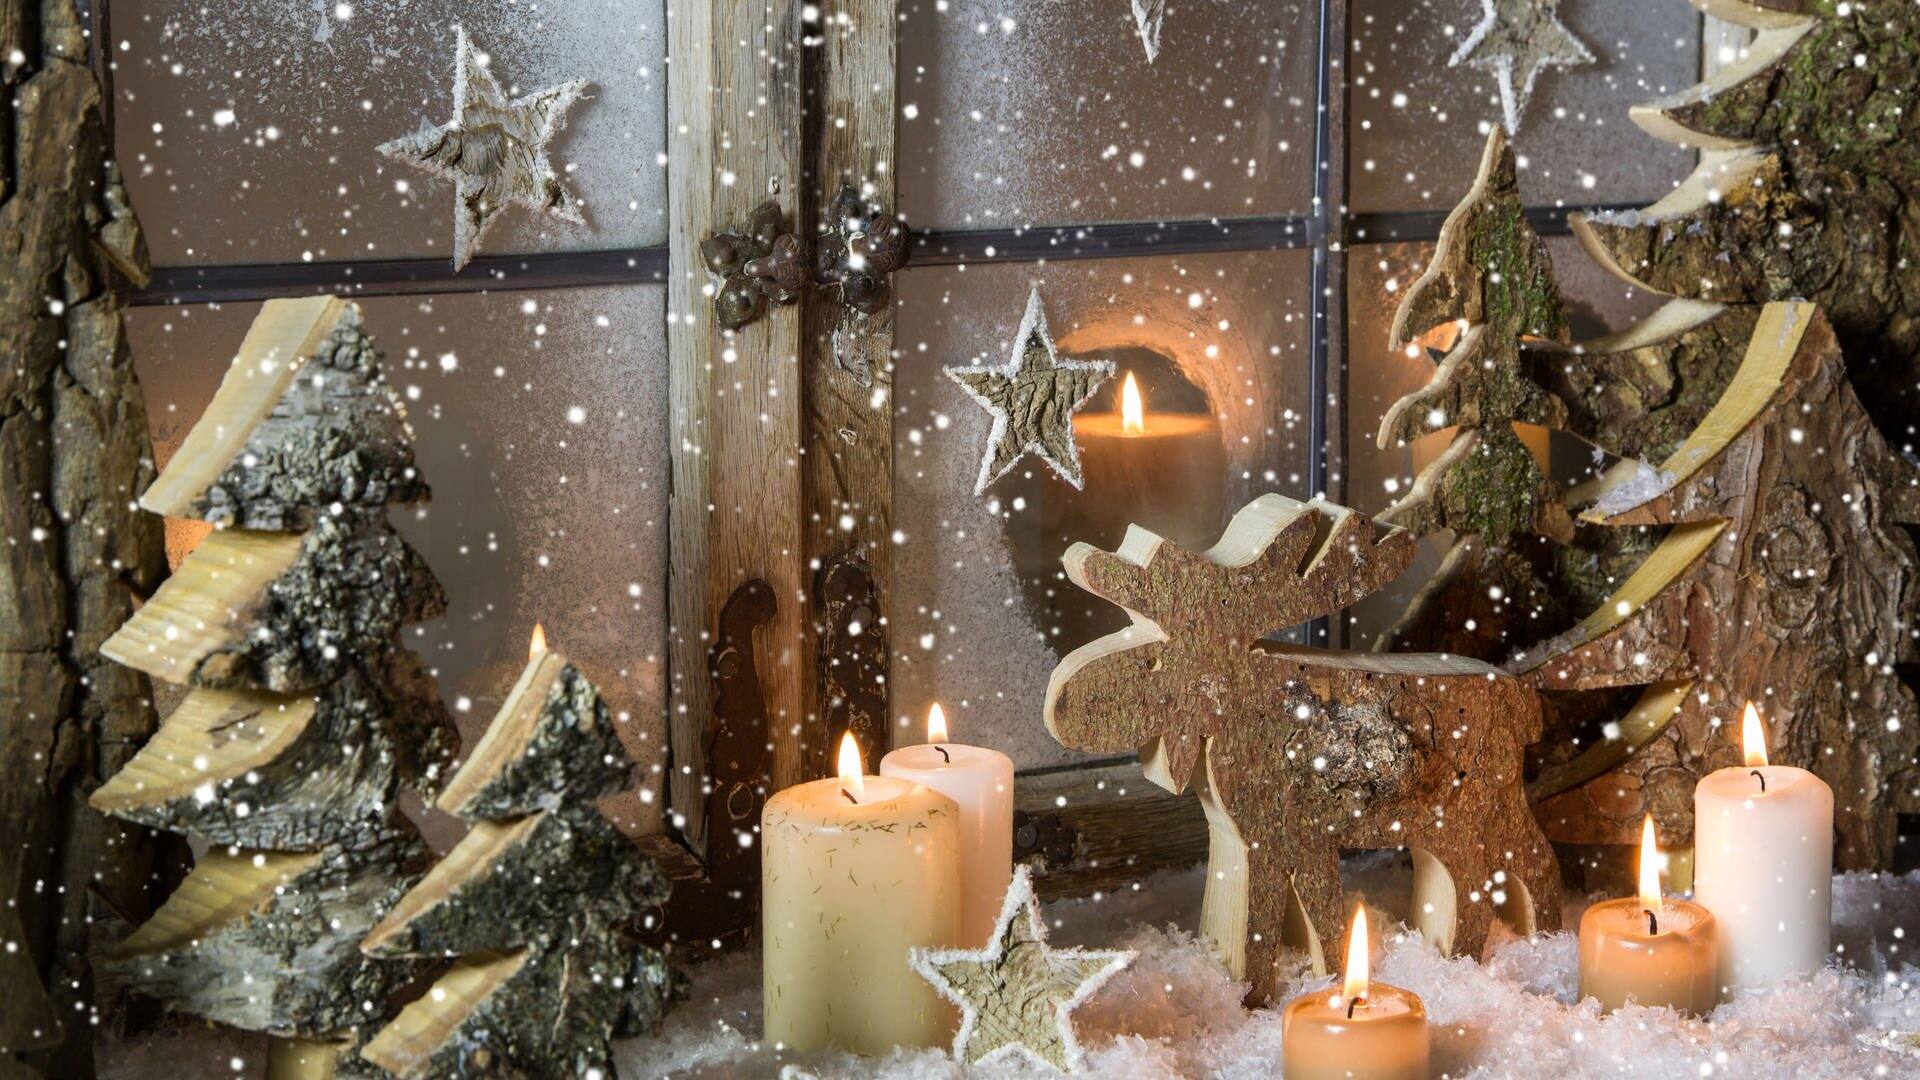 Weihnachtsdeko vor dem Fenster: Mit Tannenzweigen, Kerzen und einer Elch-Figur aus Holz (Foto: Adobe Stock / Jeanette Dietl)